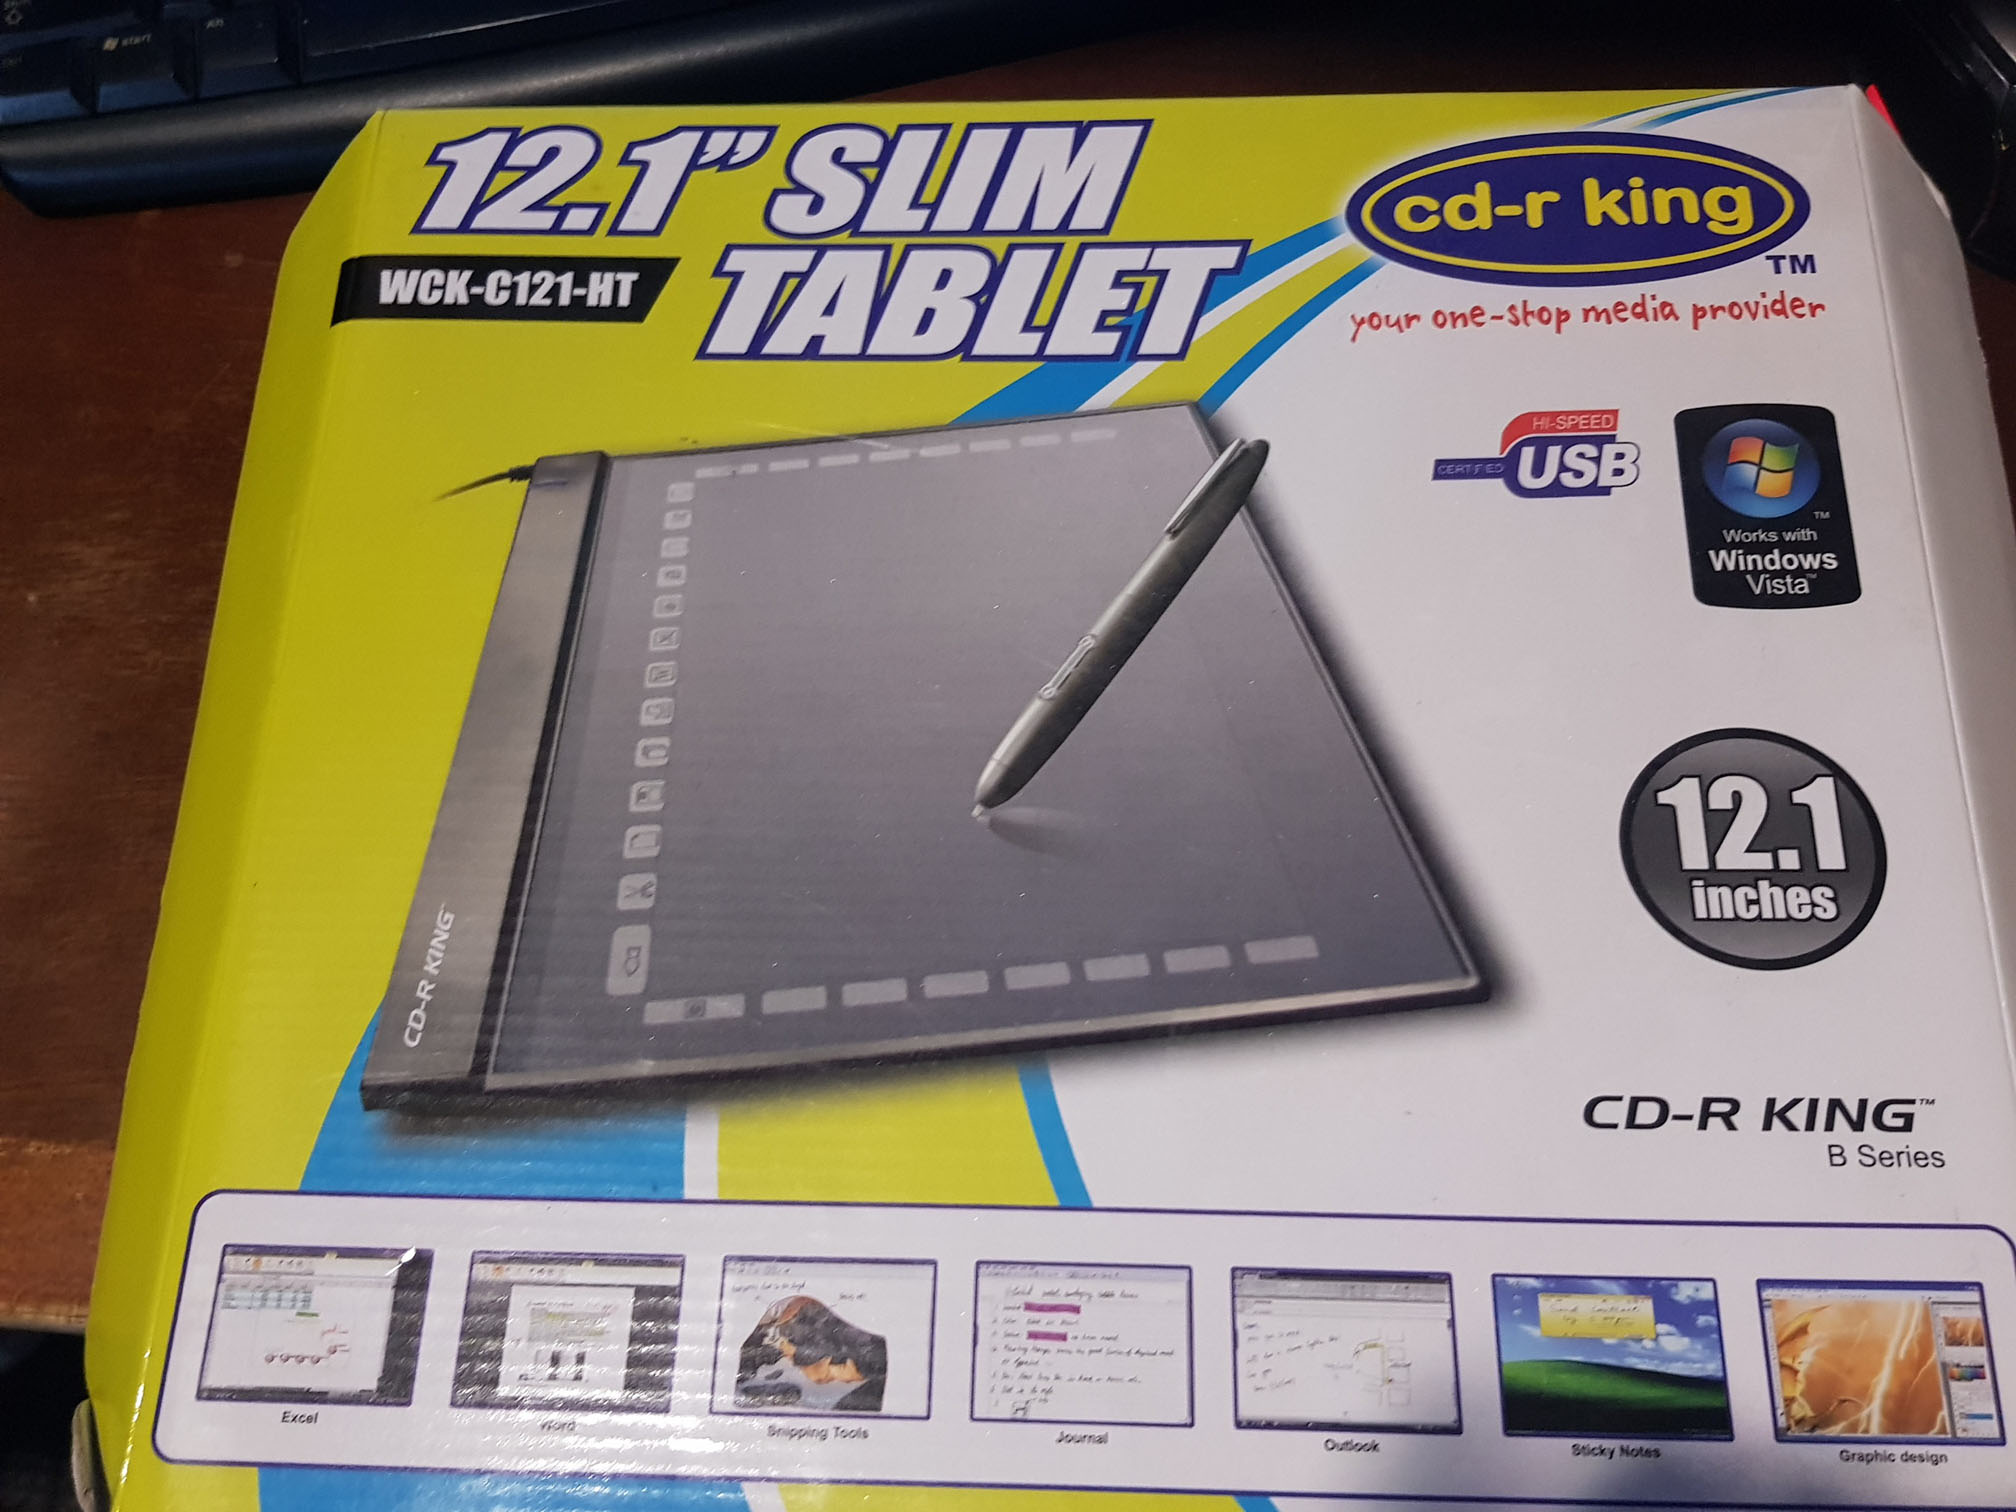 CD-R King tablet package